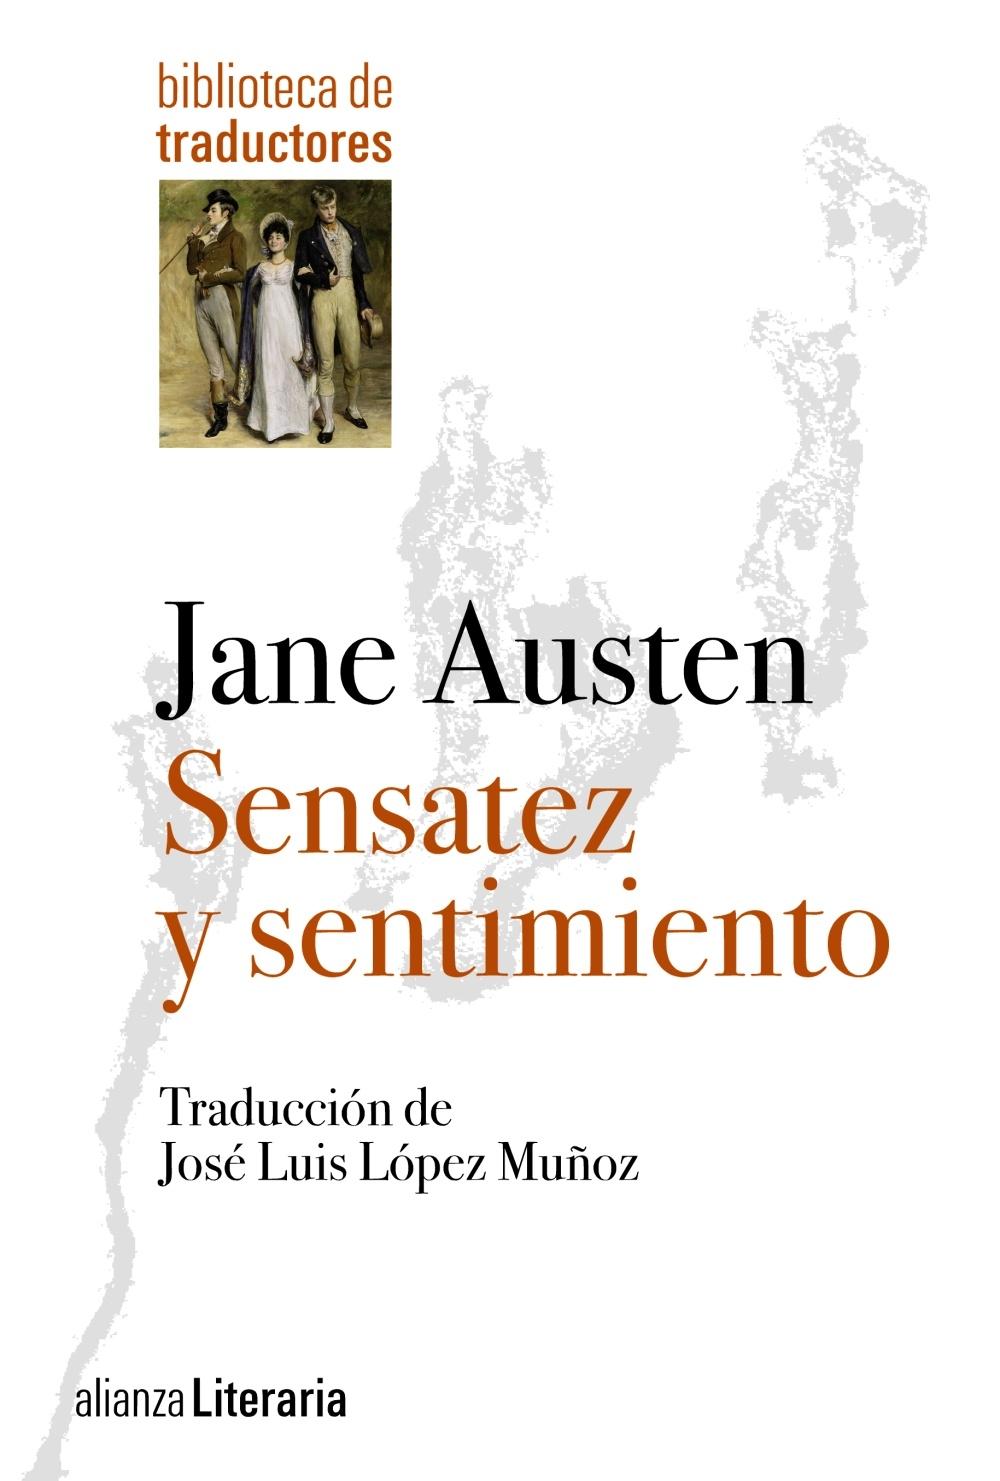 Sensatez y Sentimiento "Traducción de José Luis López Muñoz"